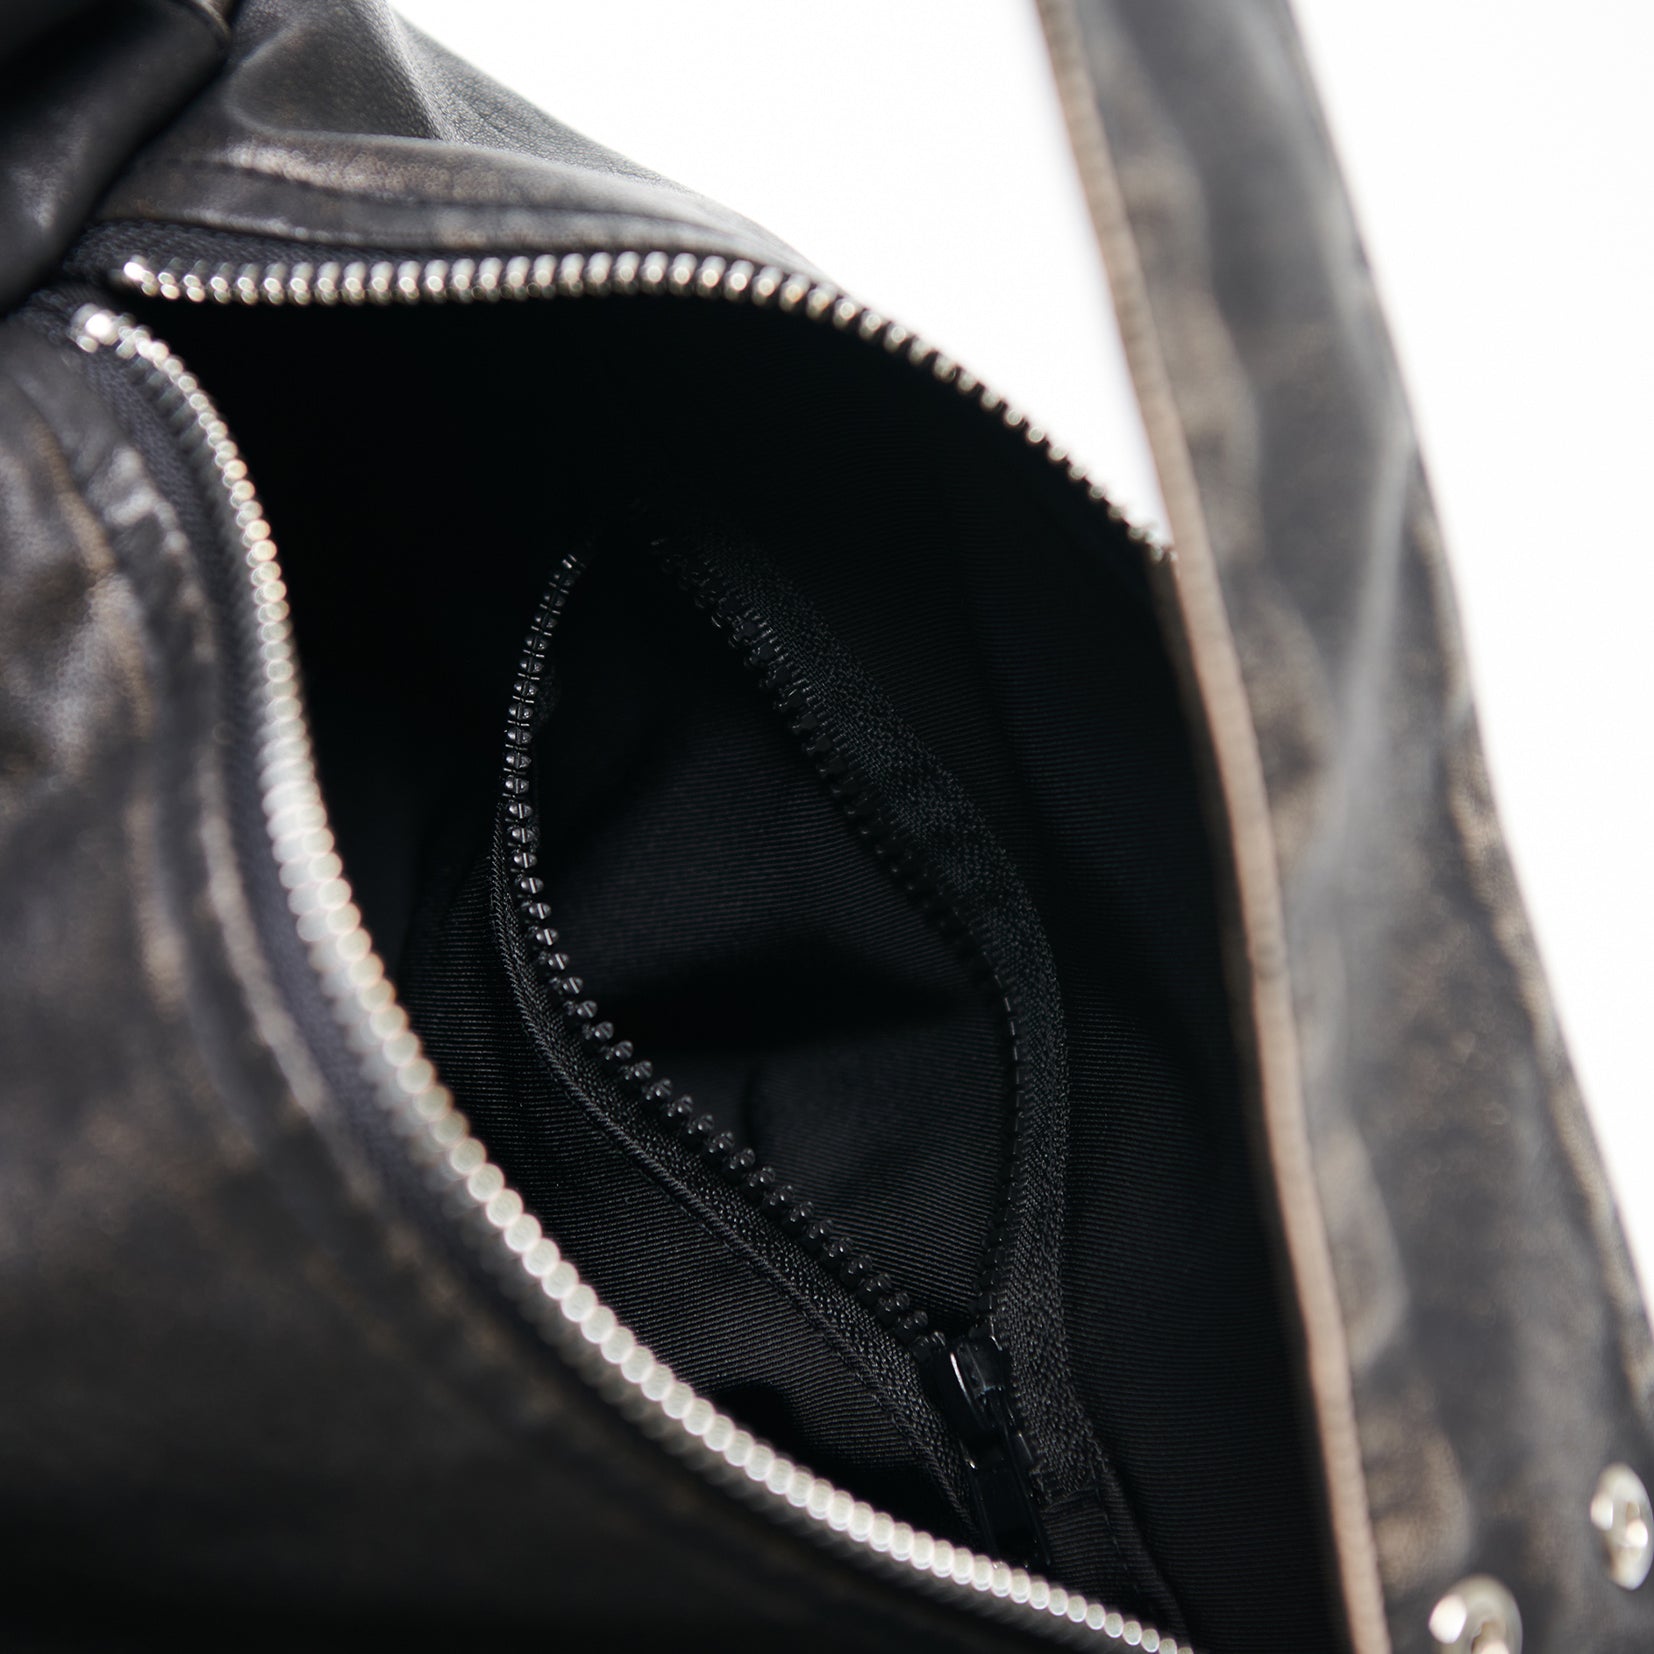 Distressed vegan leather shoulder mini duffle bag - black